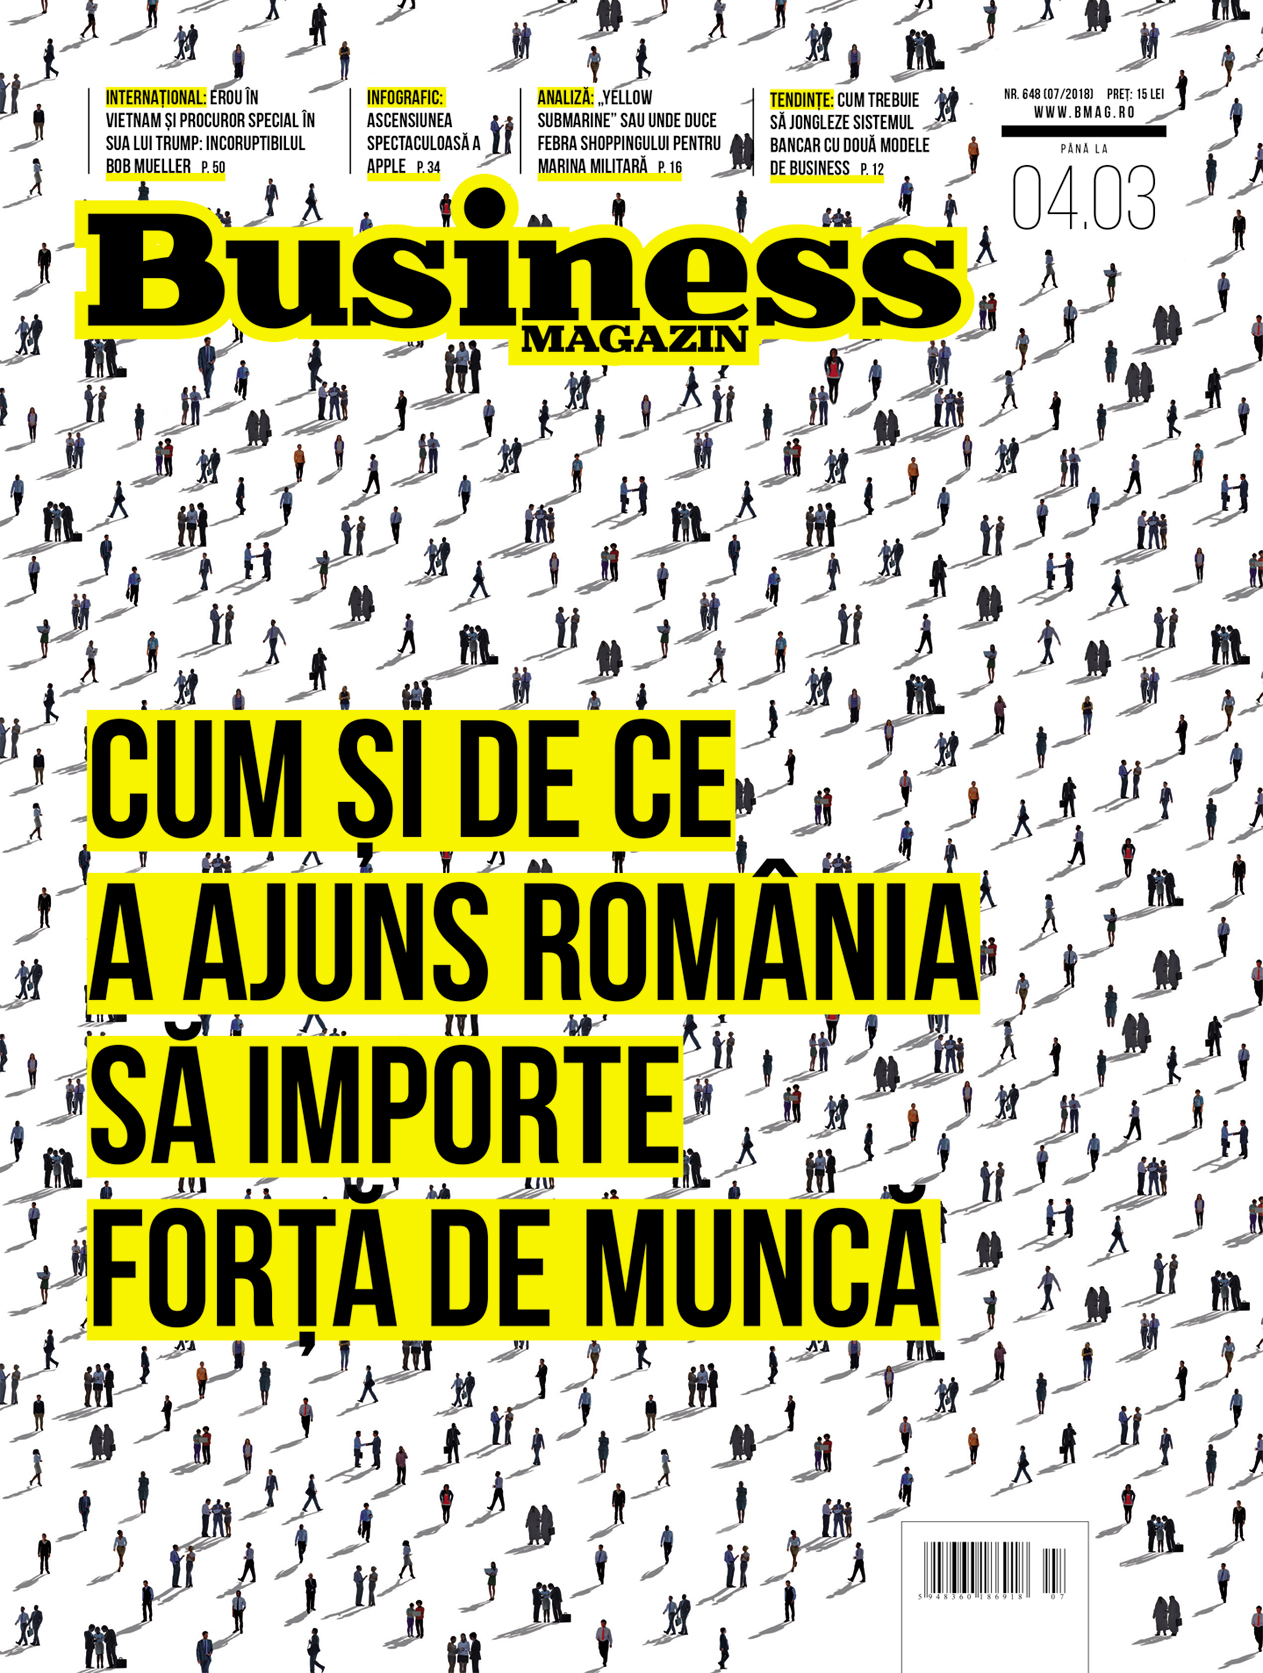 Un nou număr din revista Business MAGAZIN: Cum şi de ce a ajuns România să importe forţă de muncă din Asia